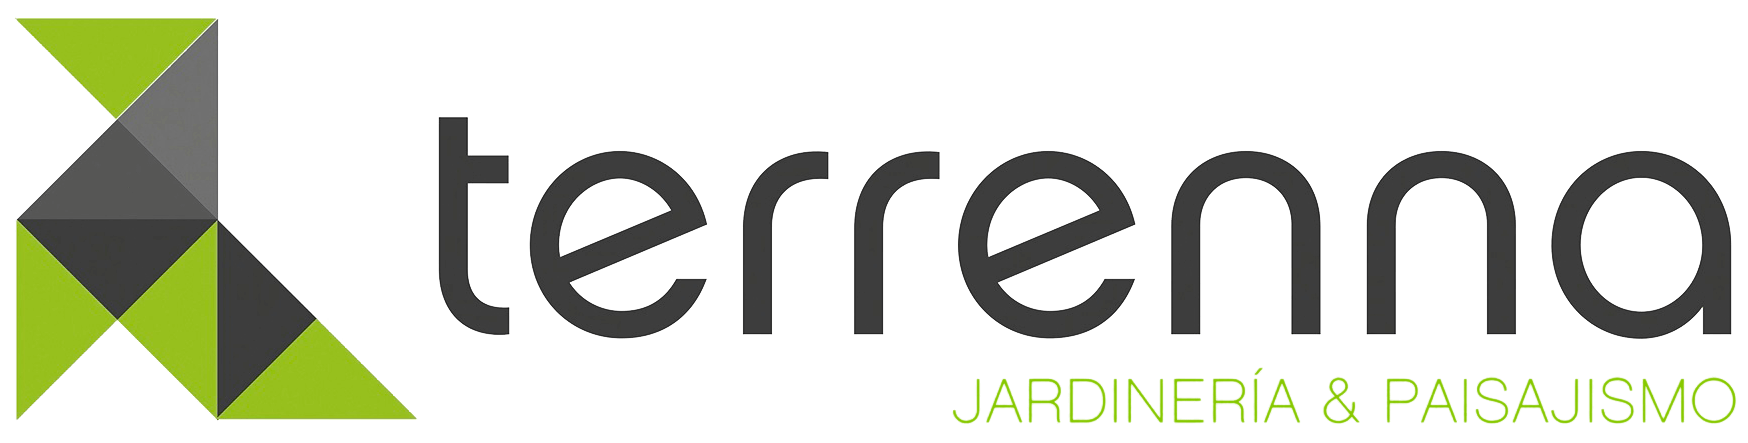 Terrenna-logo